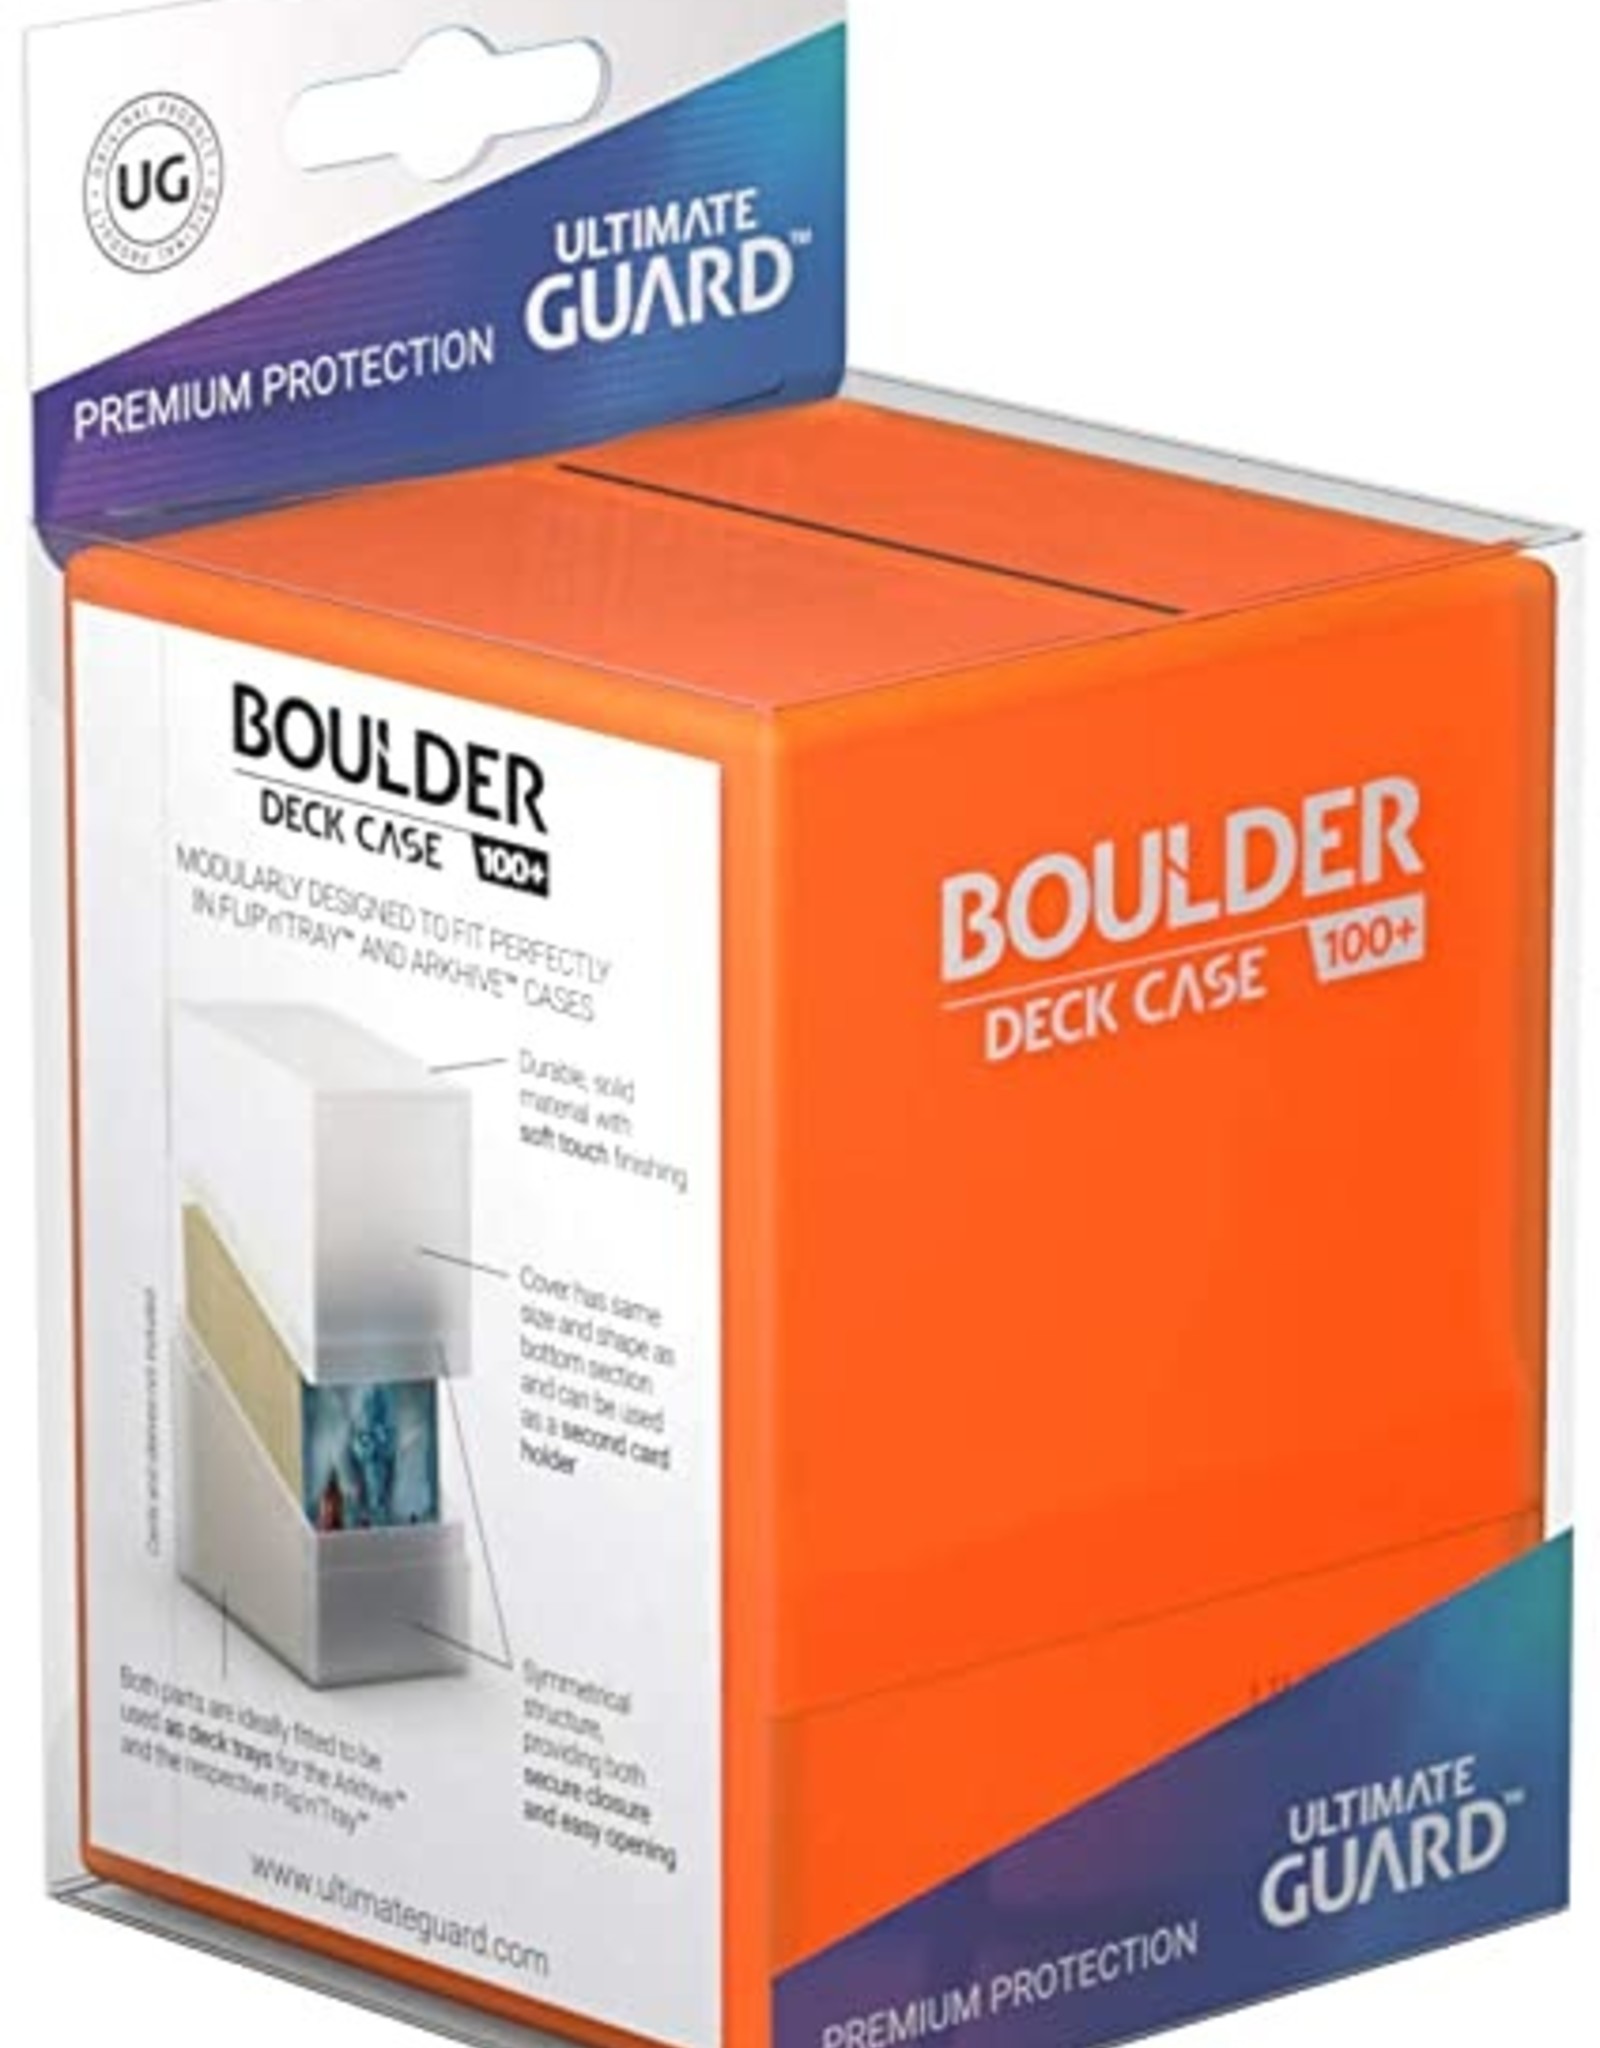 Ultimate Guard UGD Boulder Deck Case 100+